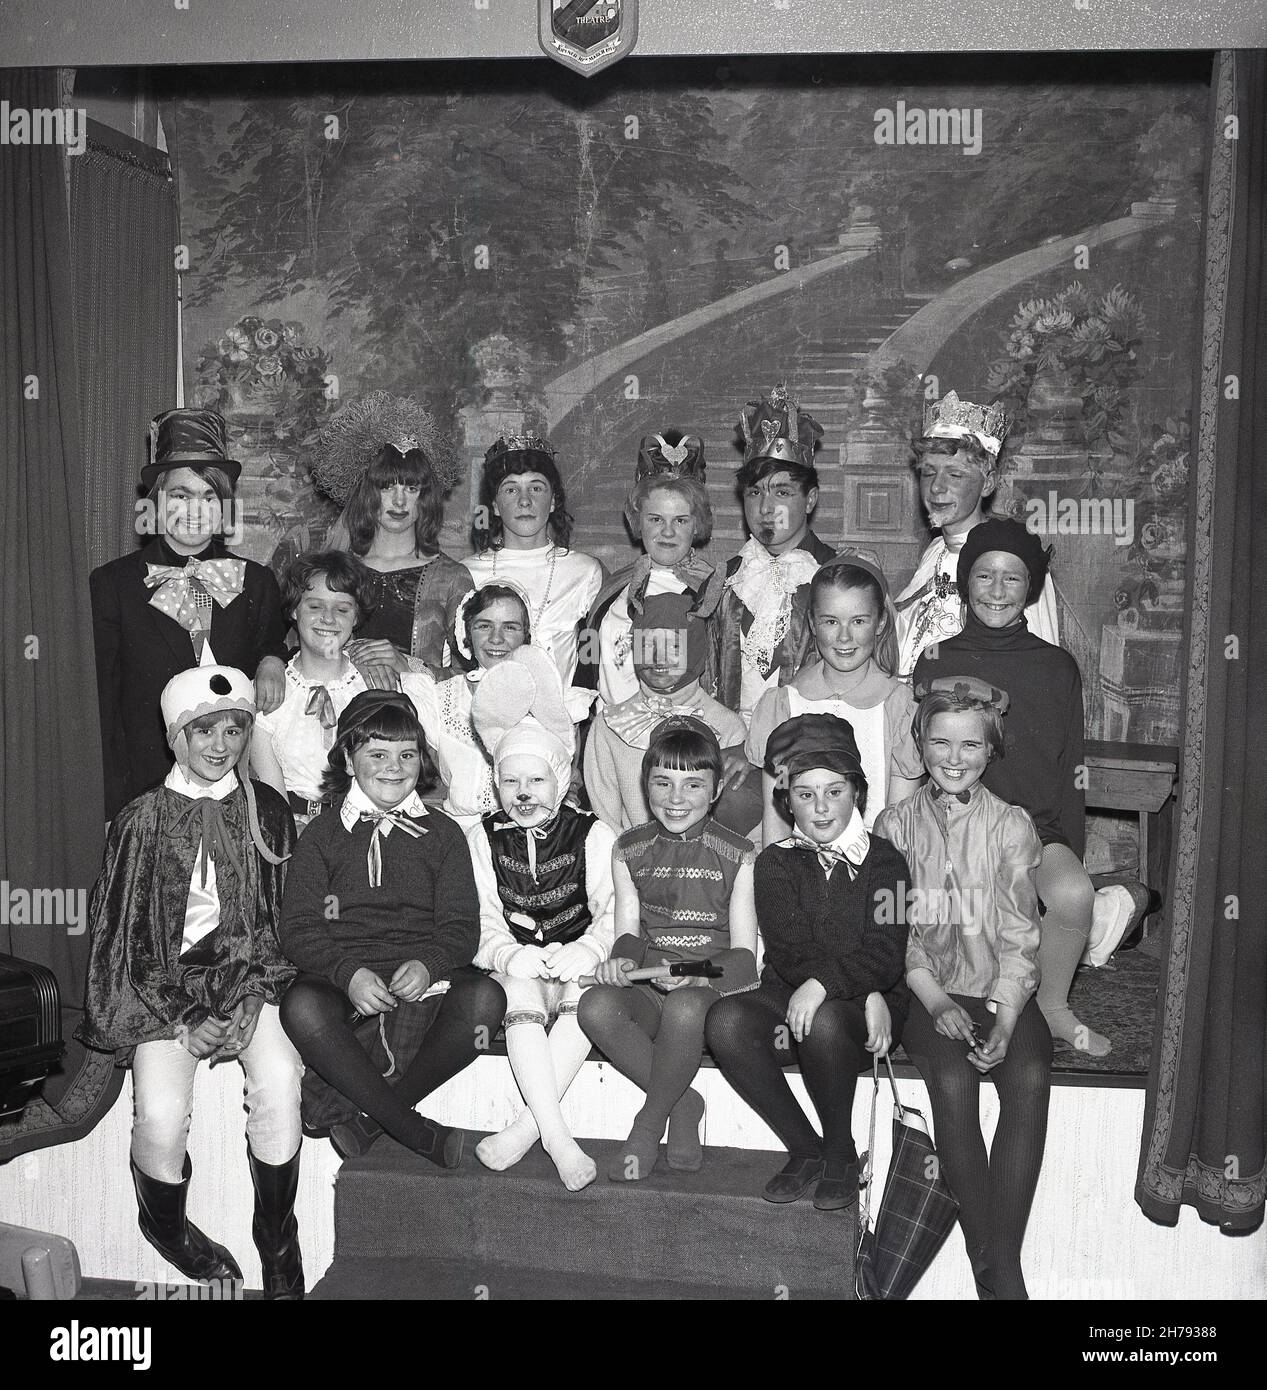 1965, histórico, sentados juntos en un pequeño escenario, grandes sonrisas de un grupo de niños de un centro juvenil vestidos con sus trajes para la obra, Alice in Wonderland, Fife, Escocia, Reino Unido. Foto de stock